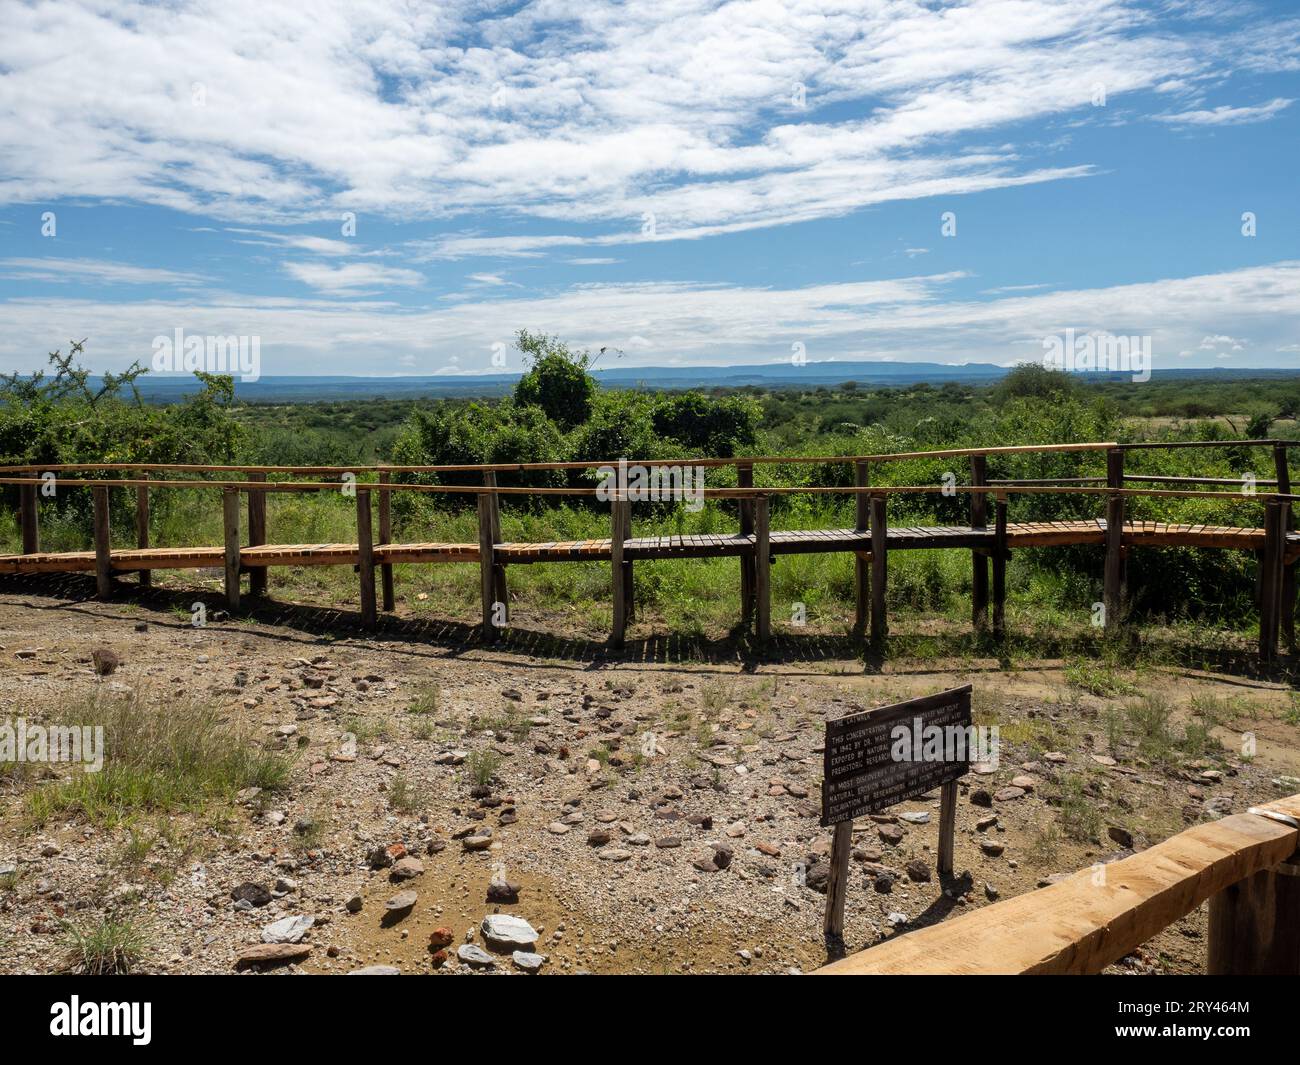 Olorgesailie, un bassin sédimentaire situé dans le sud du Kenya dans la vallée du Rift en Afrique de l'est où de nombreuses haches anciennes ont été trouvées Banque D'Images